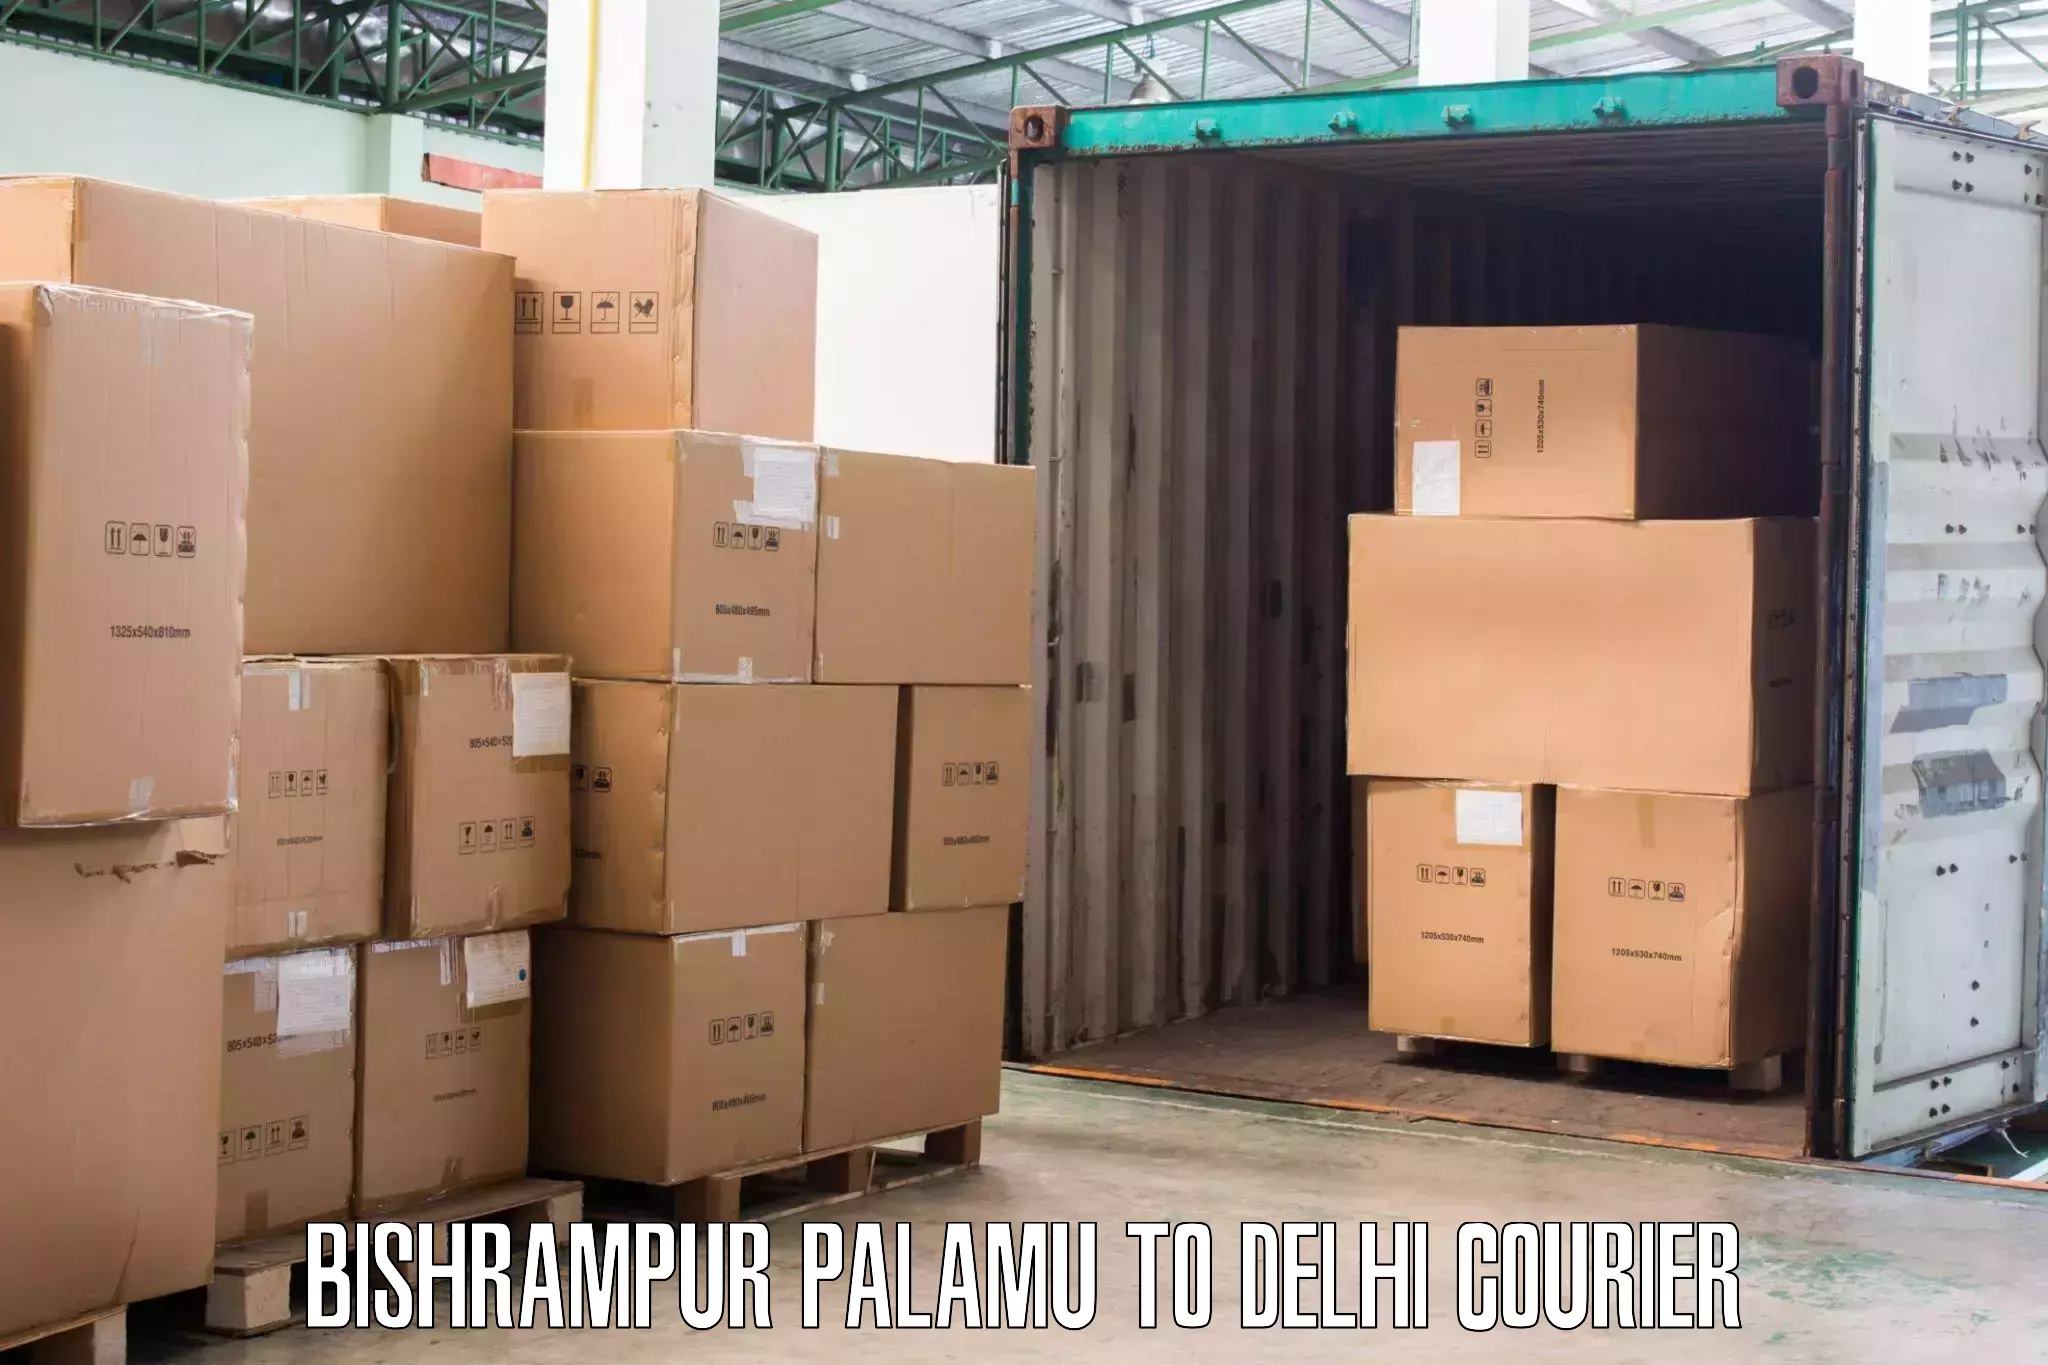 Advanced relocation solutions Bishrampur Palamu to Burari